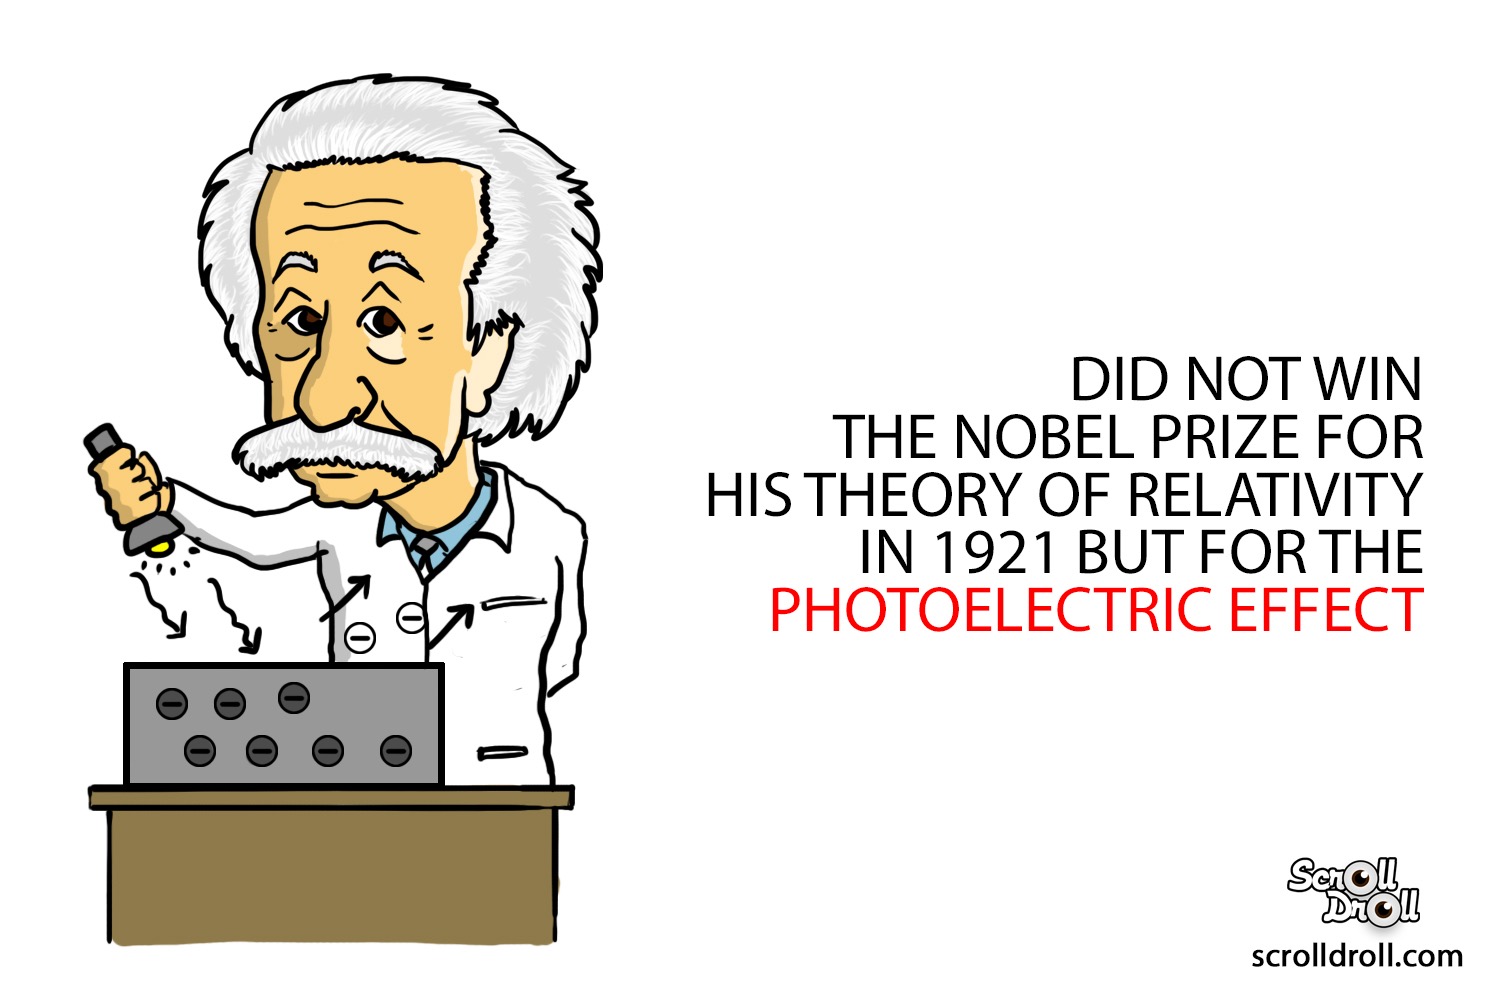 Facts about Albert Einstein